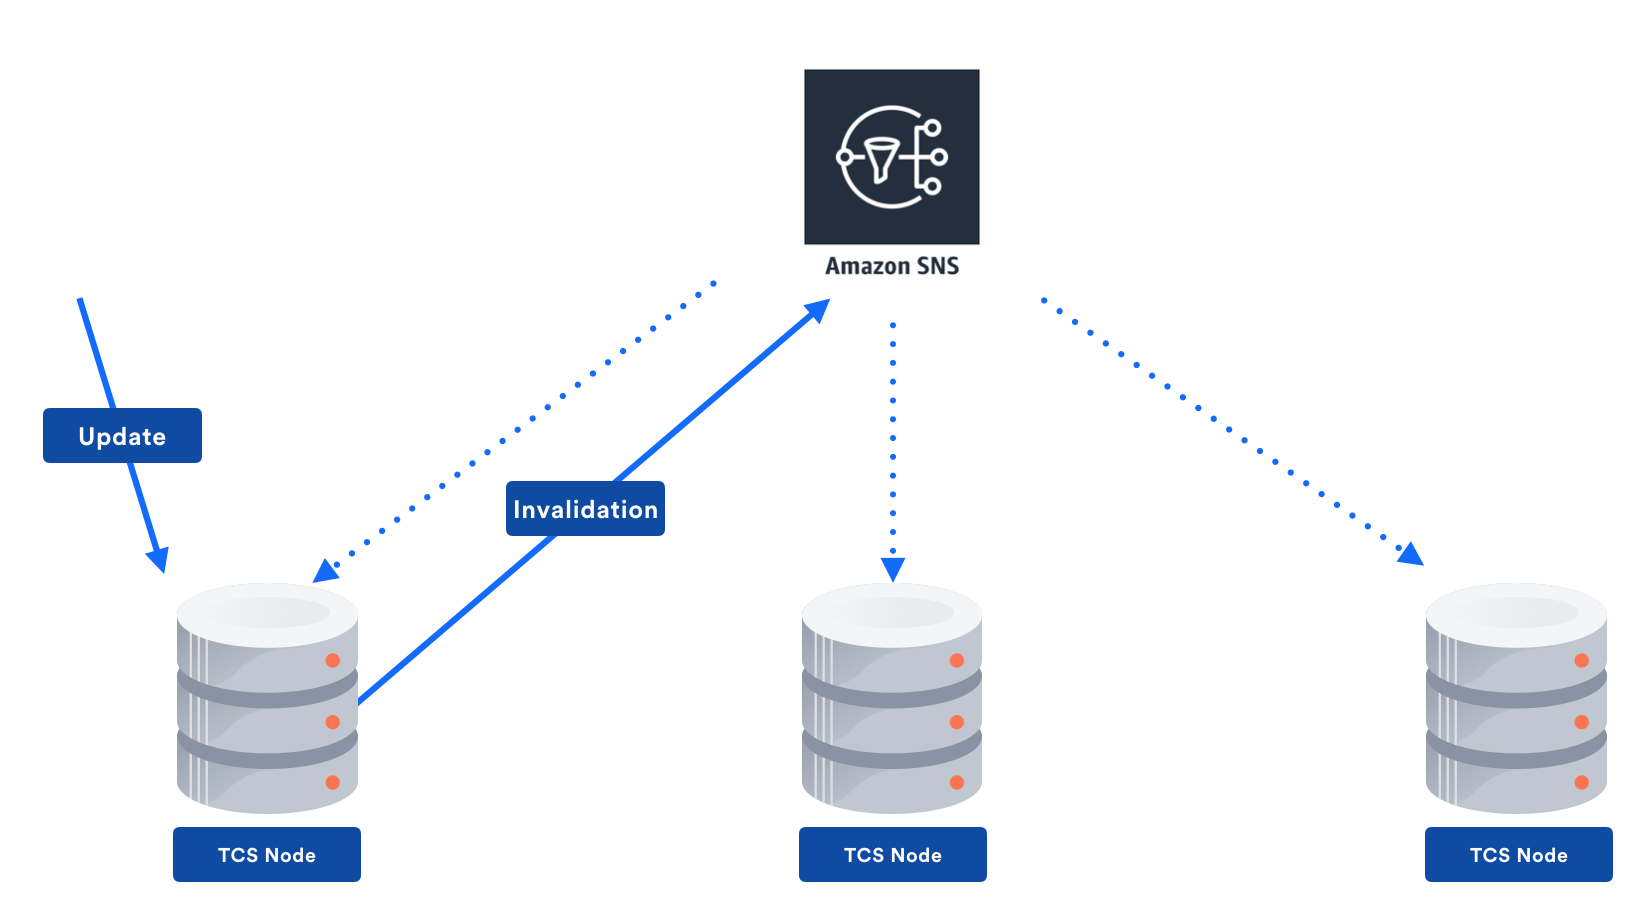 Multi-node Amazon SNS architecture
